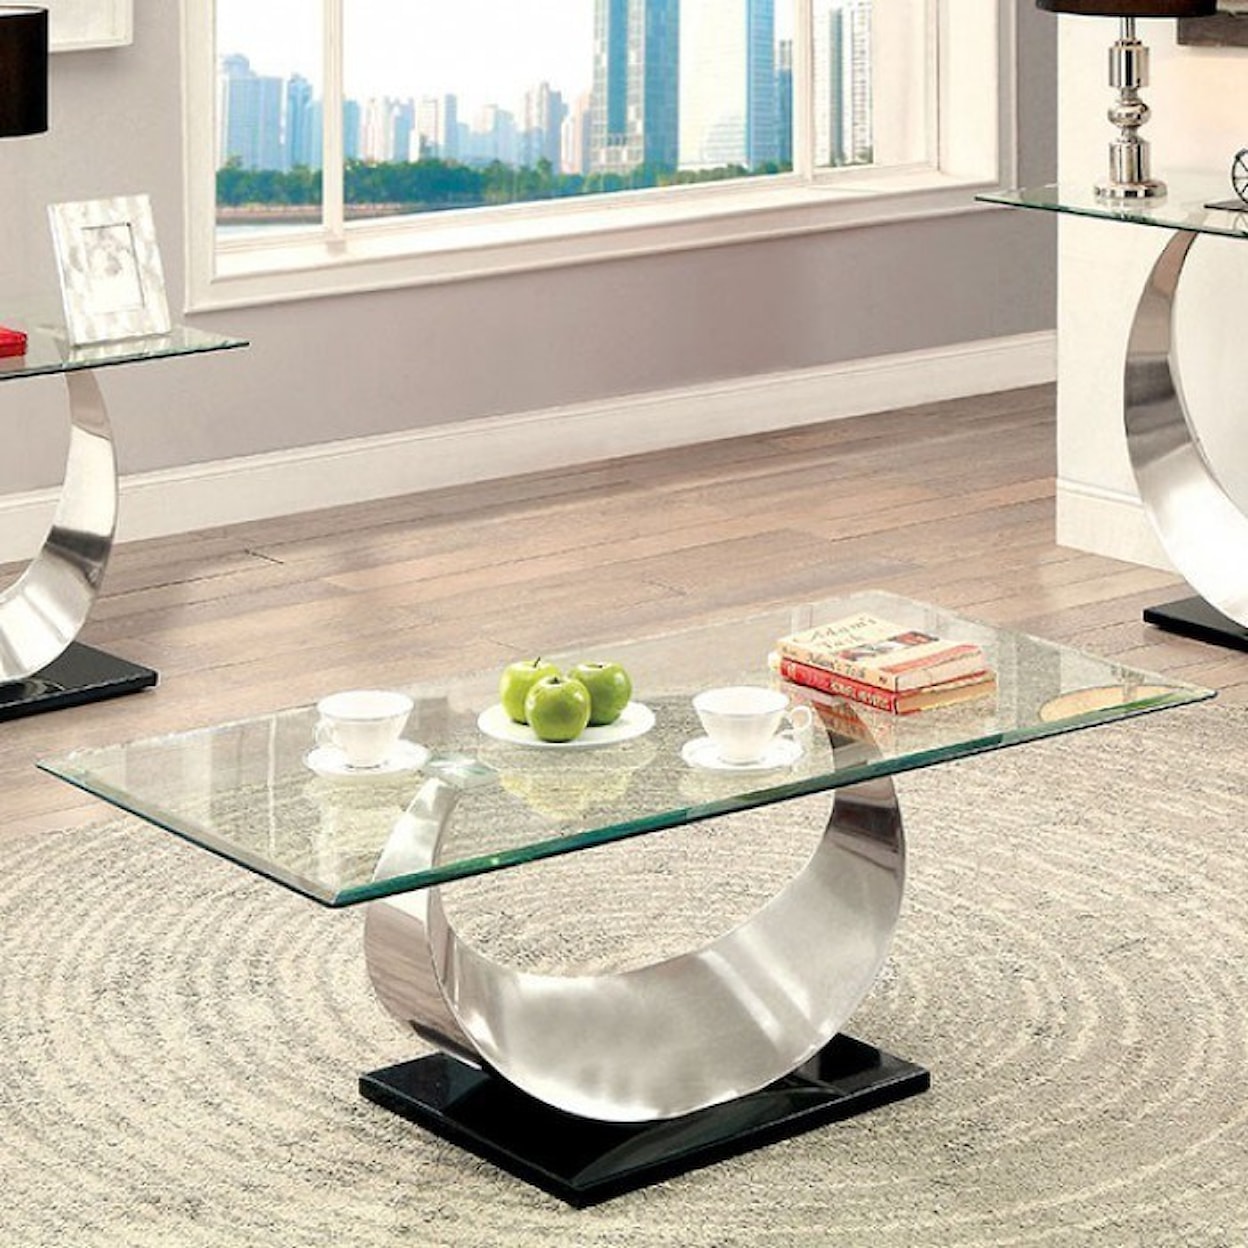 Furniture of America Orla II Coffee Table